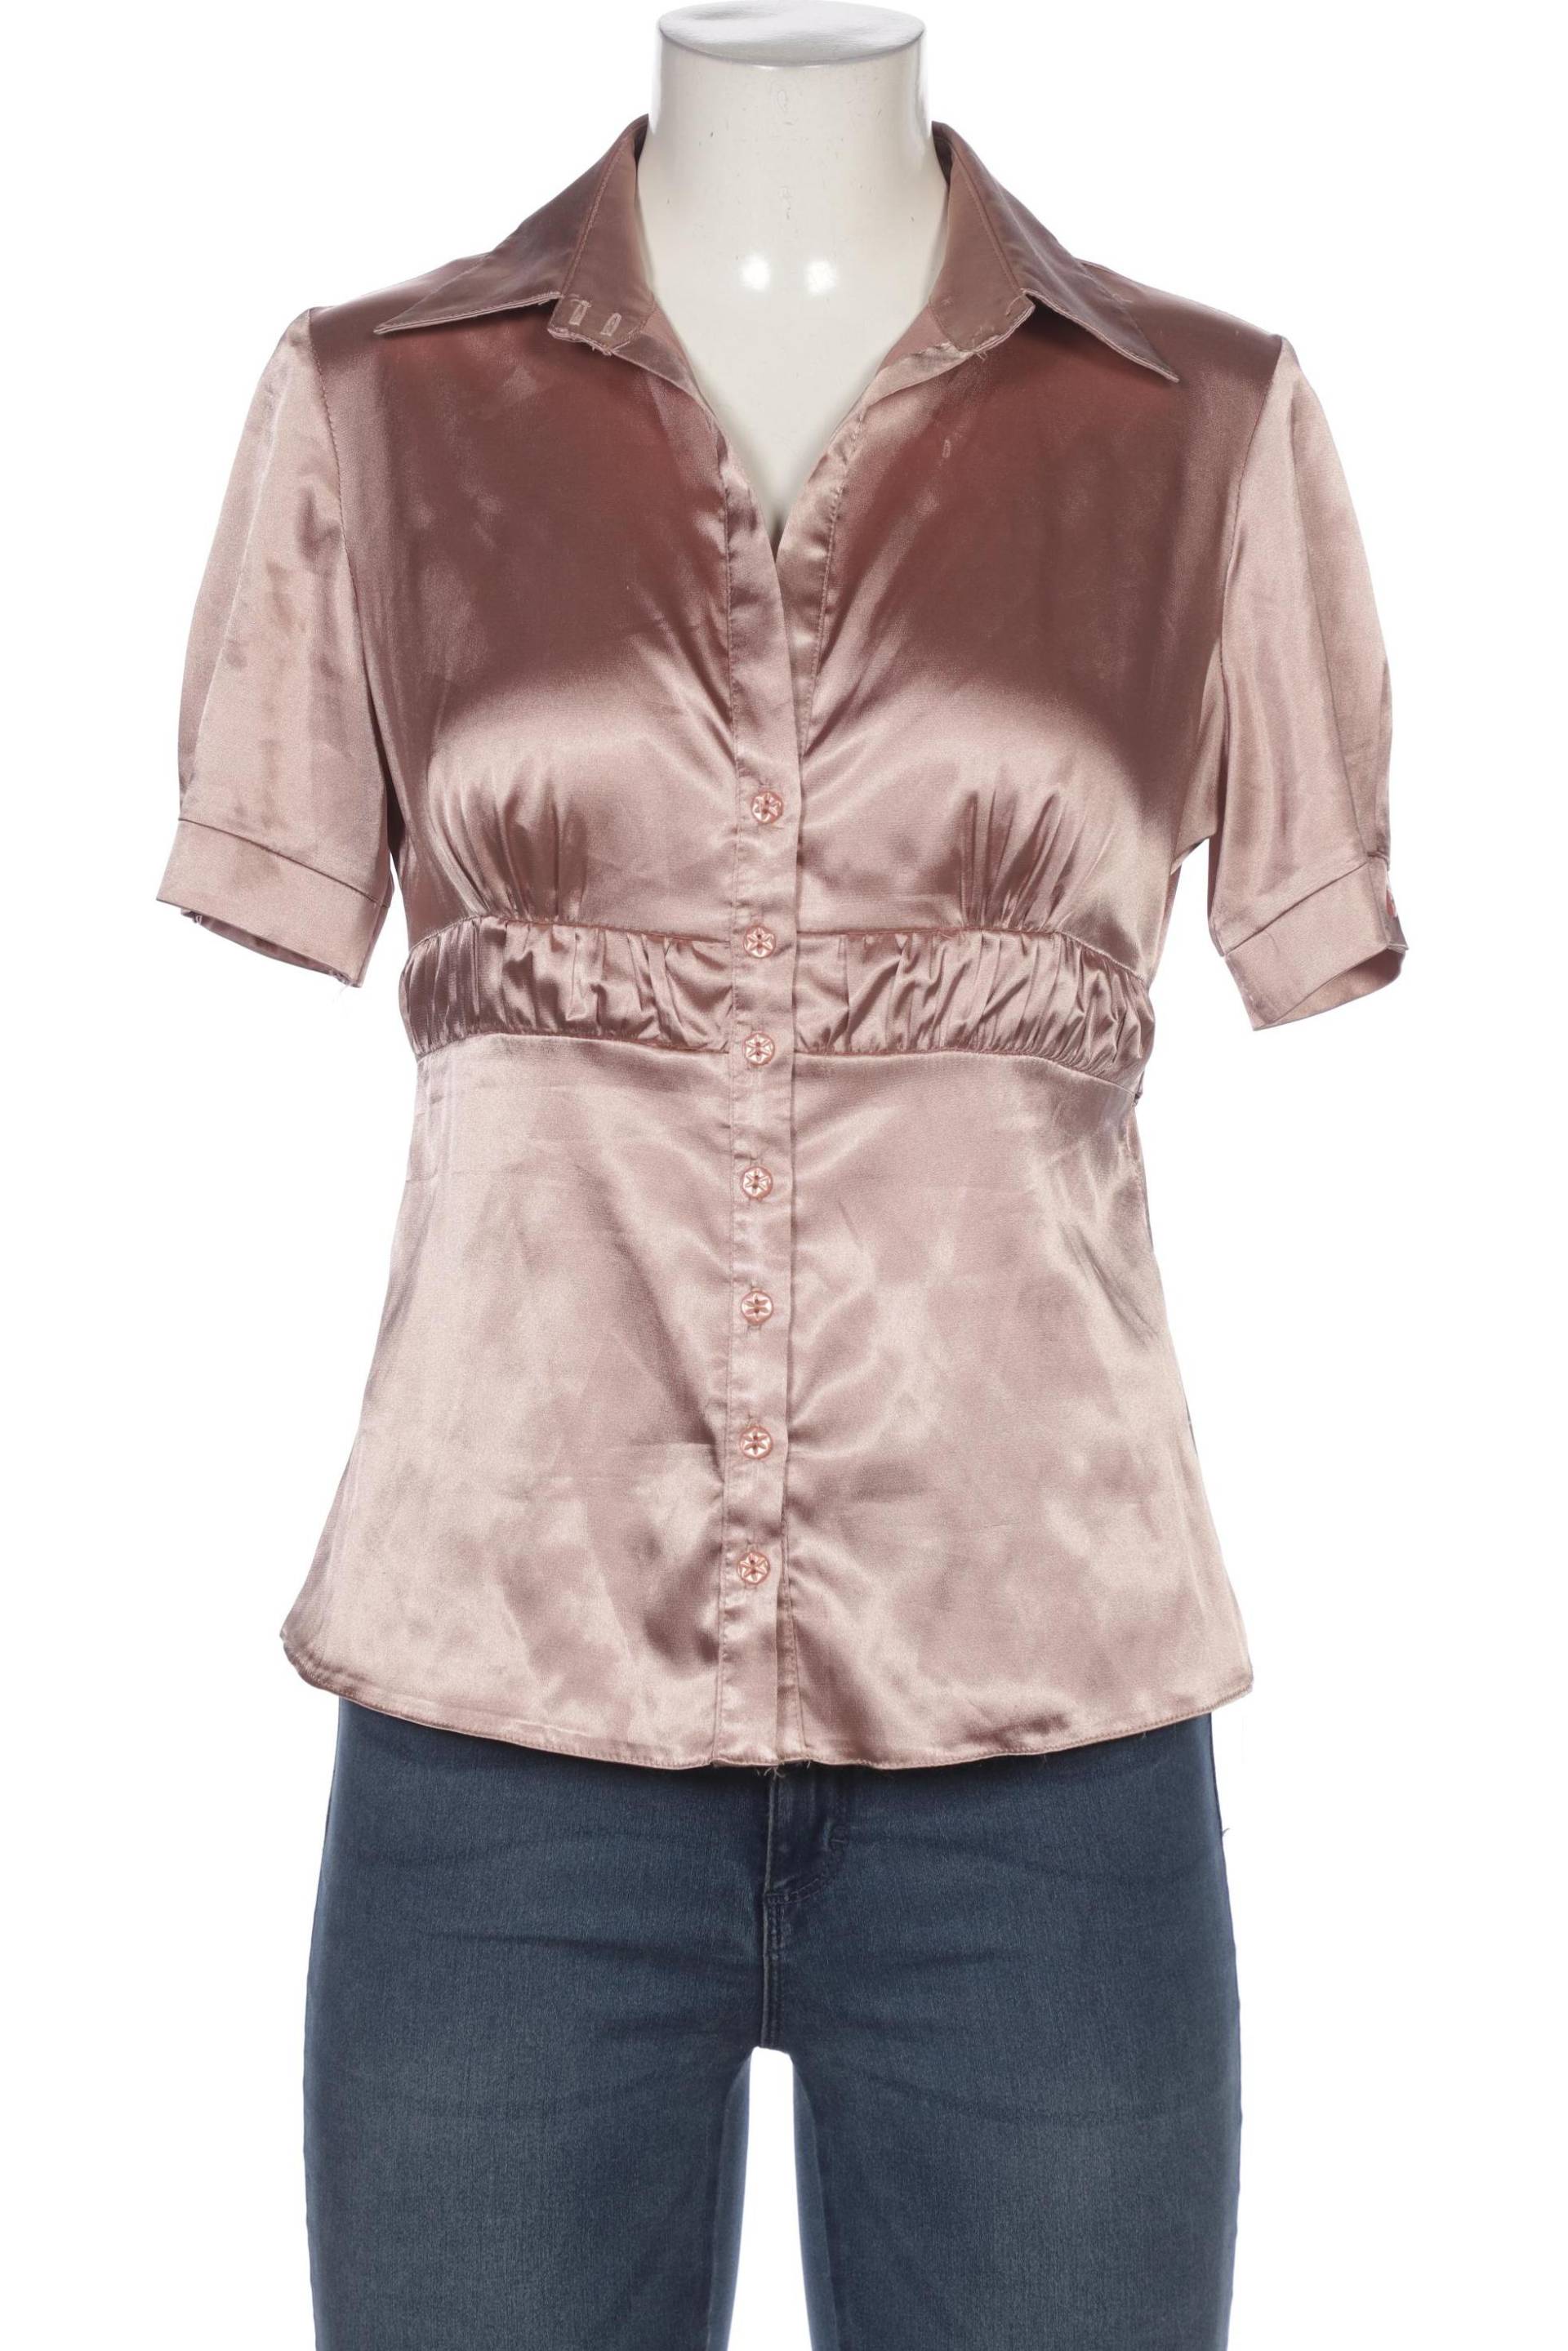 Rosner Damen Bluse, pink, Gr. 38 von ROSNER